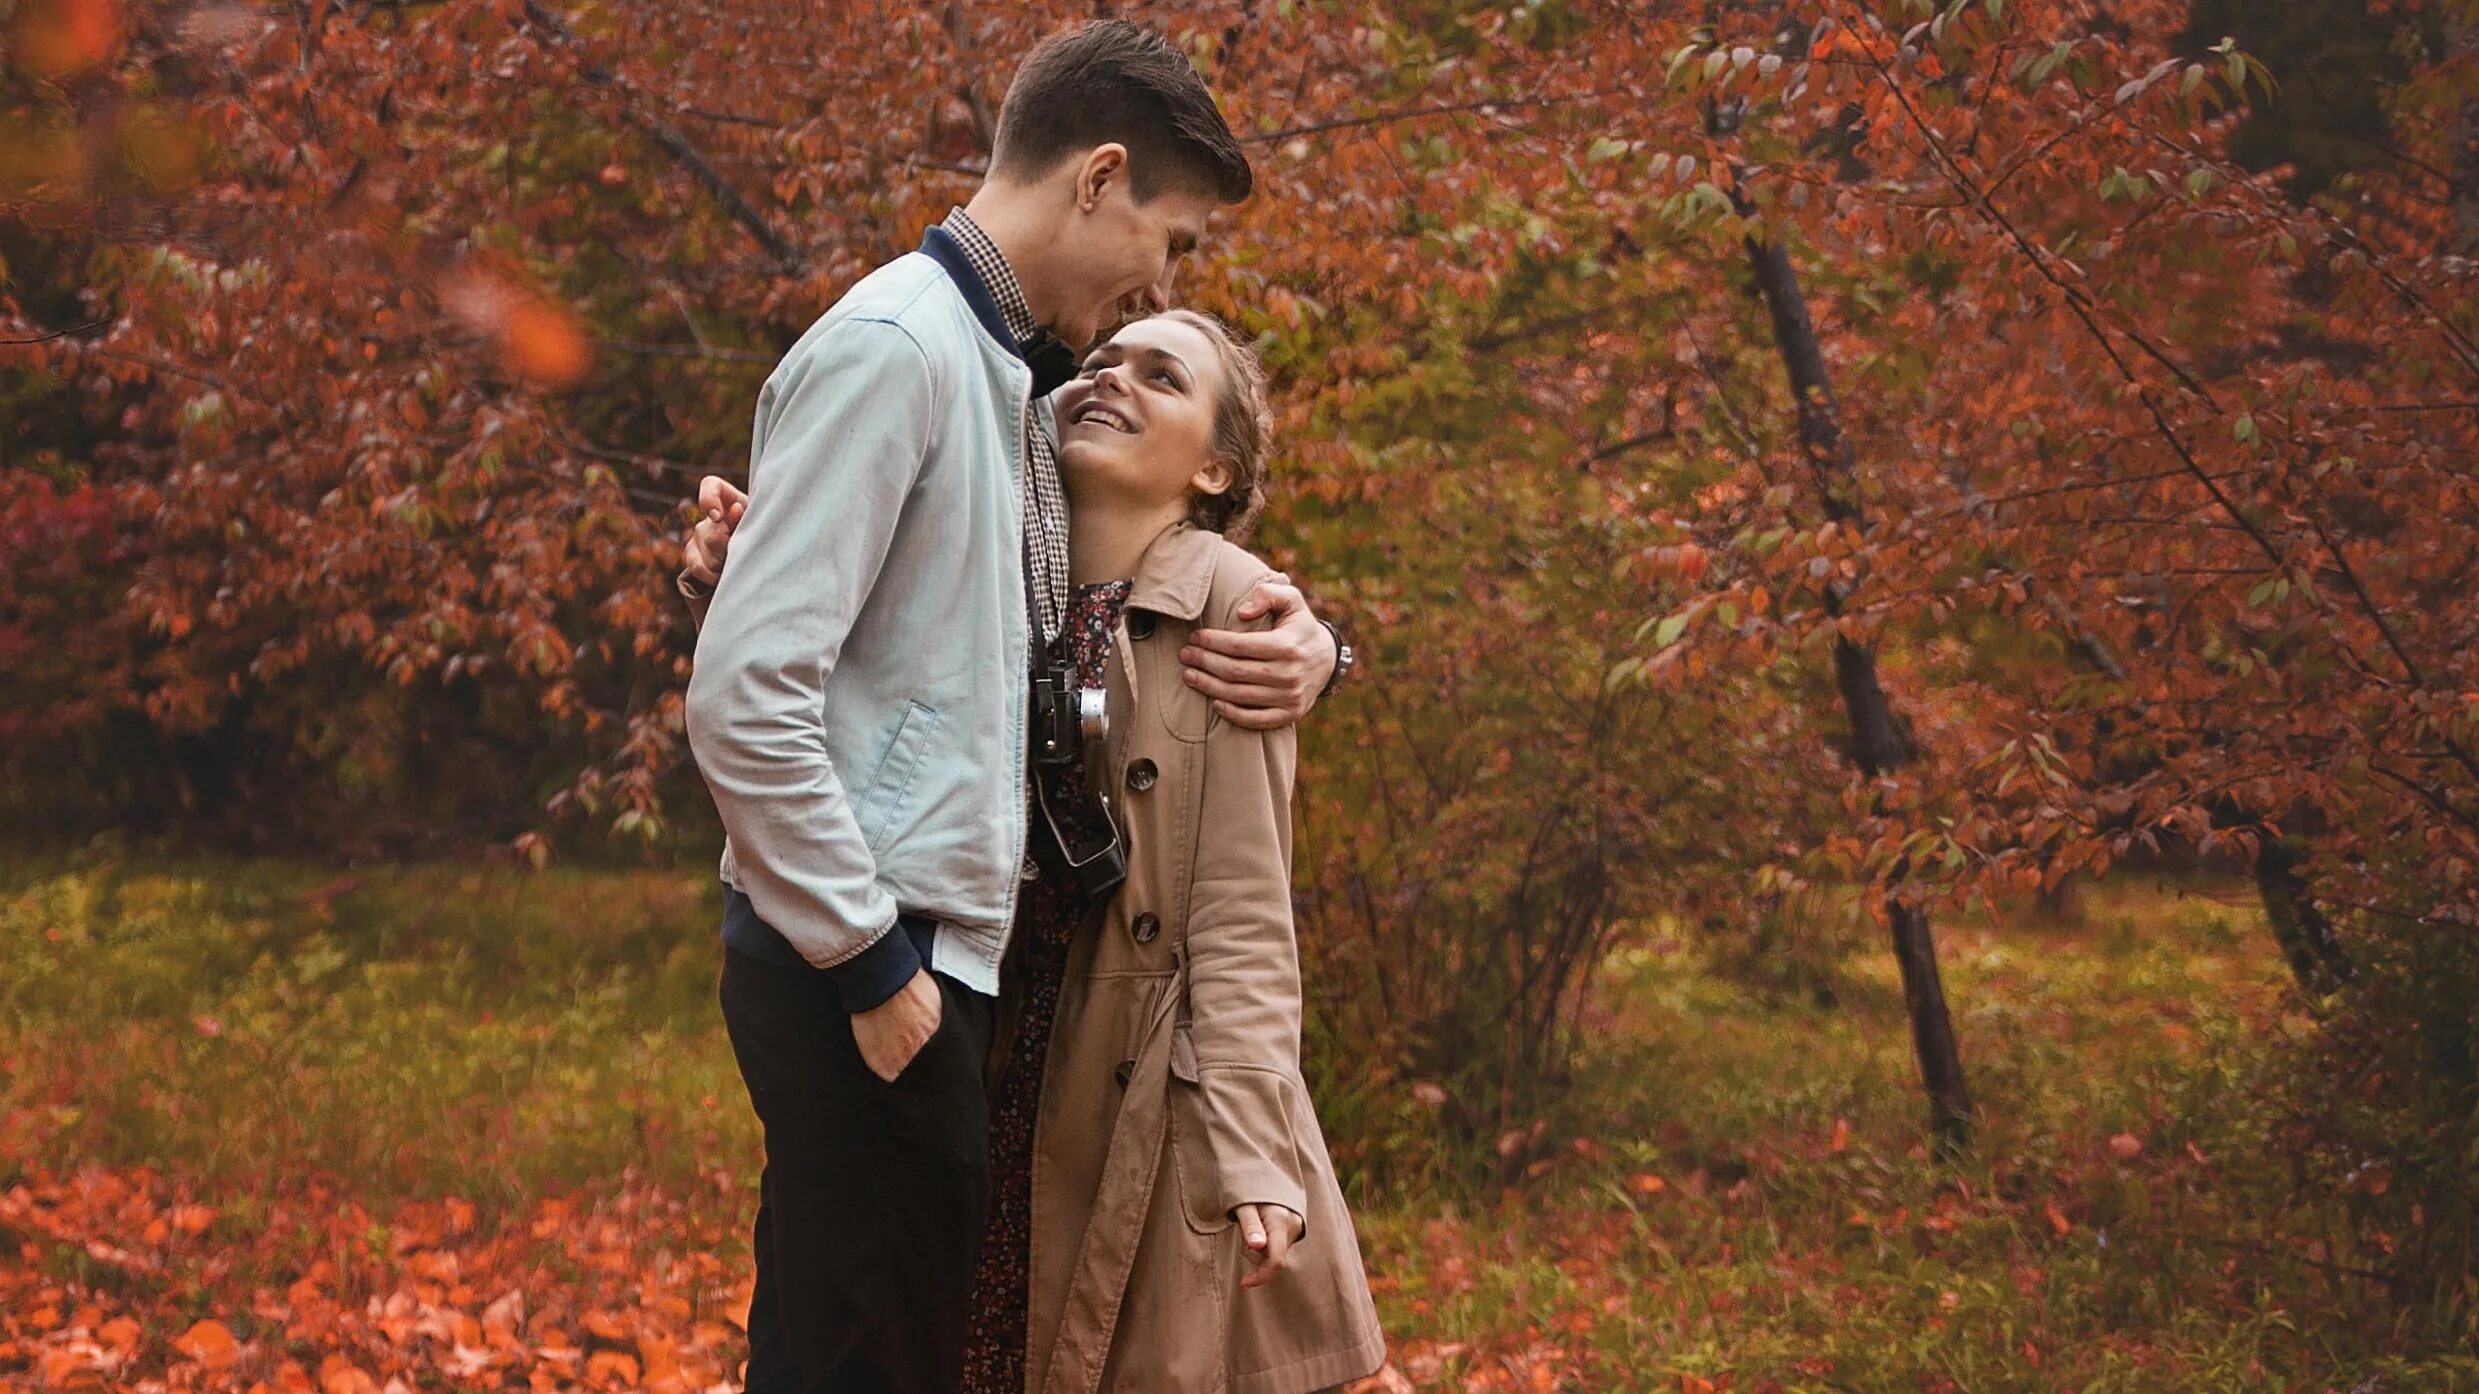 Feeling love in october. Осенняя любовь. Влюбленные осенью. Влюбленные в осеннем лесу. Осенняя фотосессия пары в парке.